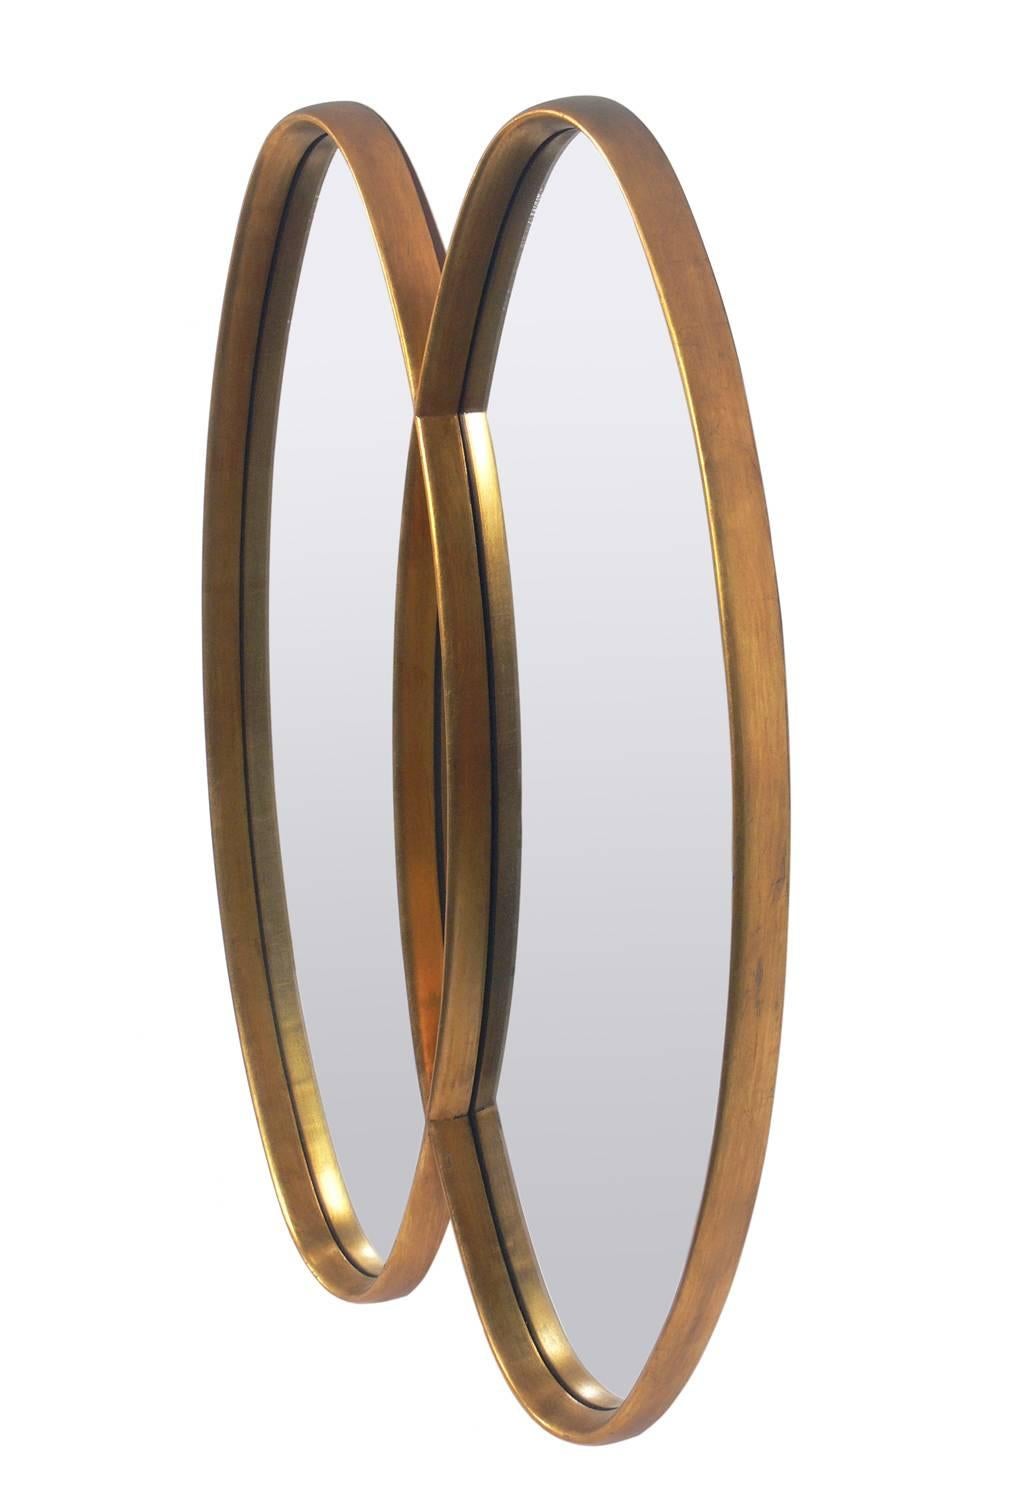 Modernistischer, ovaler, blattvergoldeter Doppelspiegel, amerikanisch, ca. 1960er Jahre. Es weist eine wunderbare Patina und Abnutzung der Blattvergoldung auf, die ein wenig von der roten chinesischen Unterschicht freilegt. Dieser Spiegel hat eine